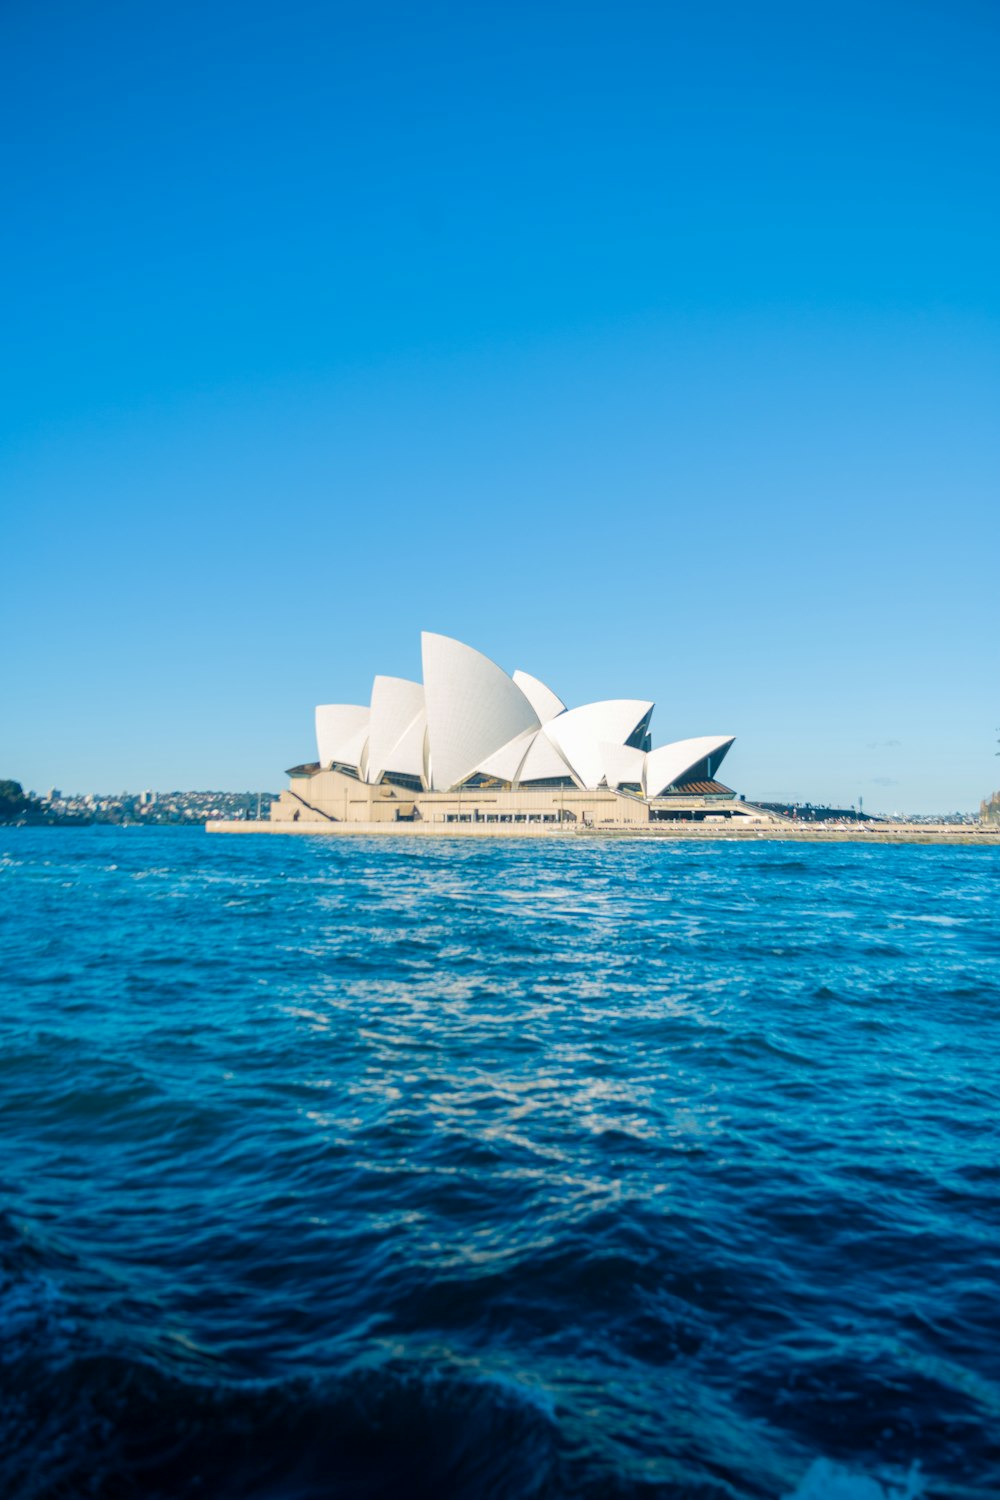 Teatro dell'Opera di Sydney in Australia durante il giorno